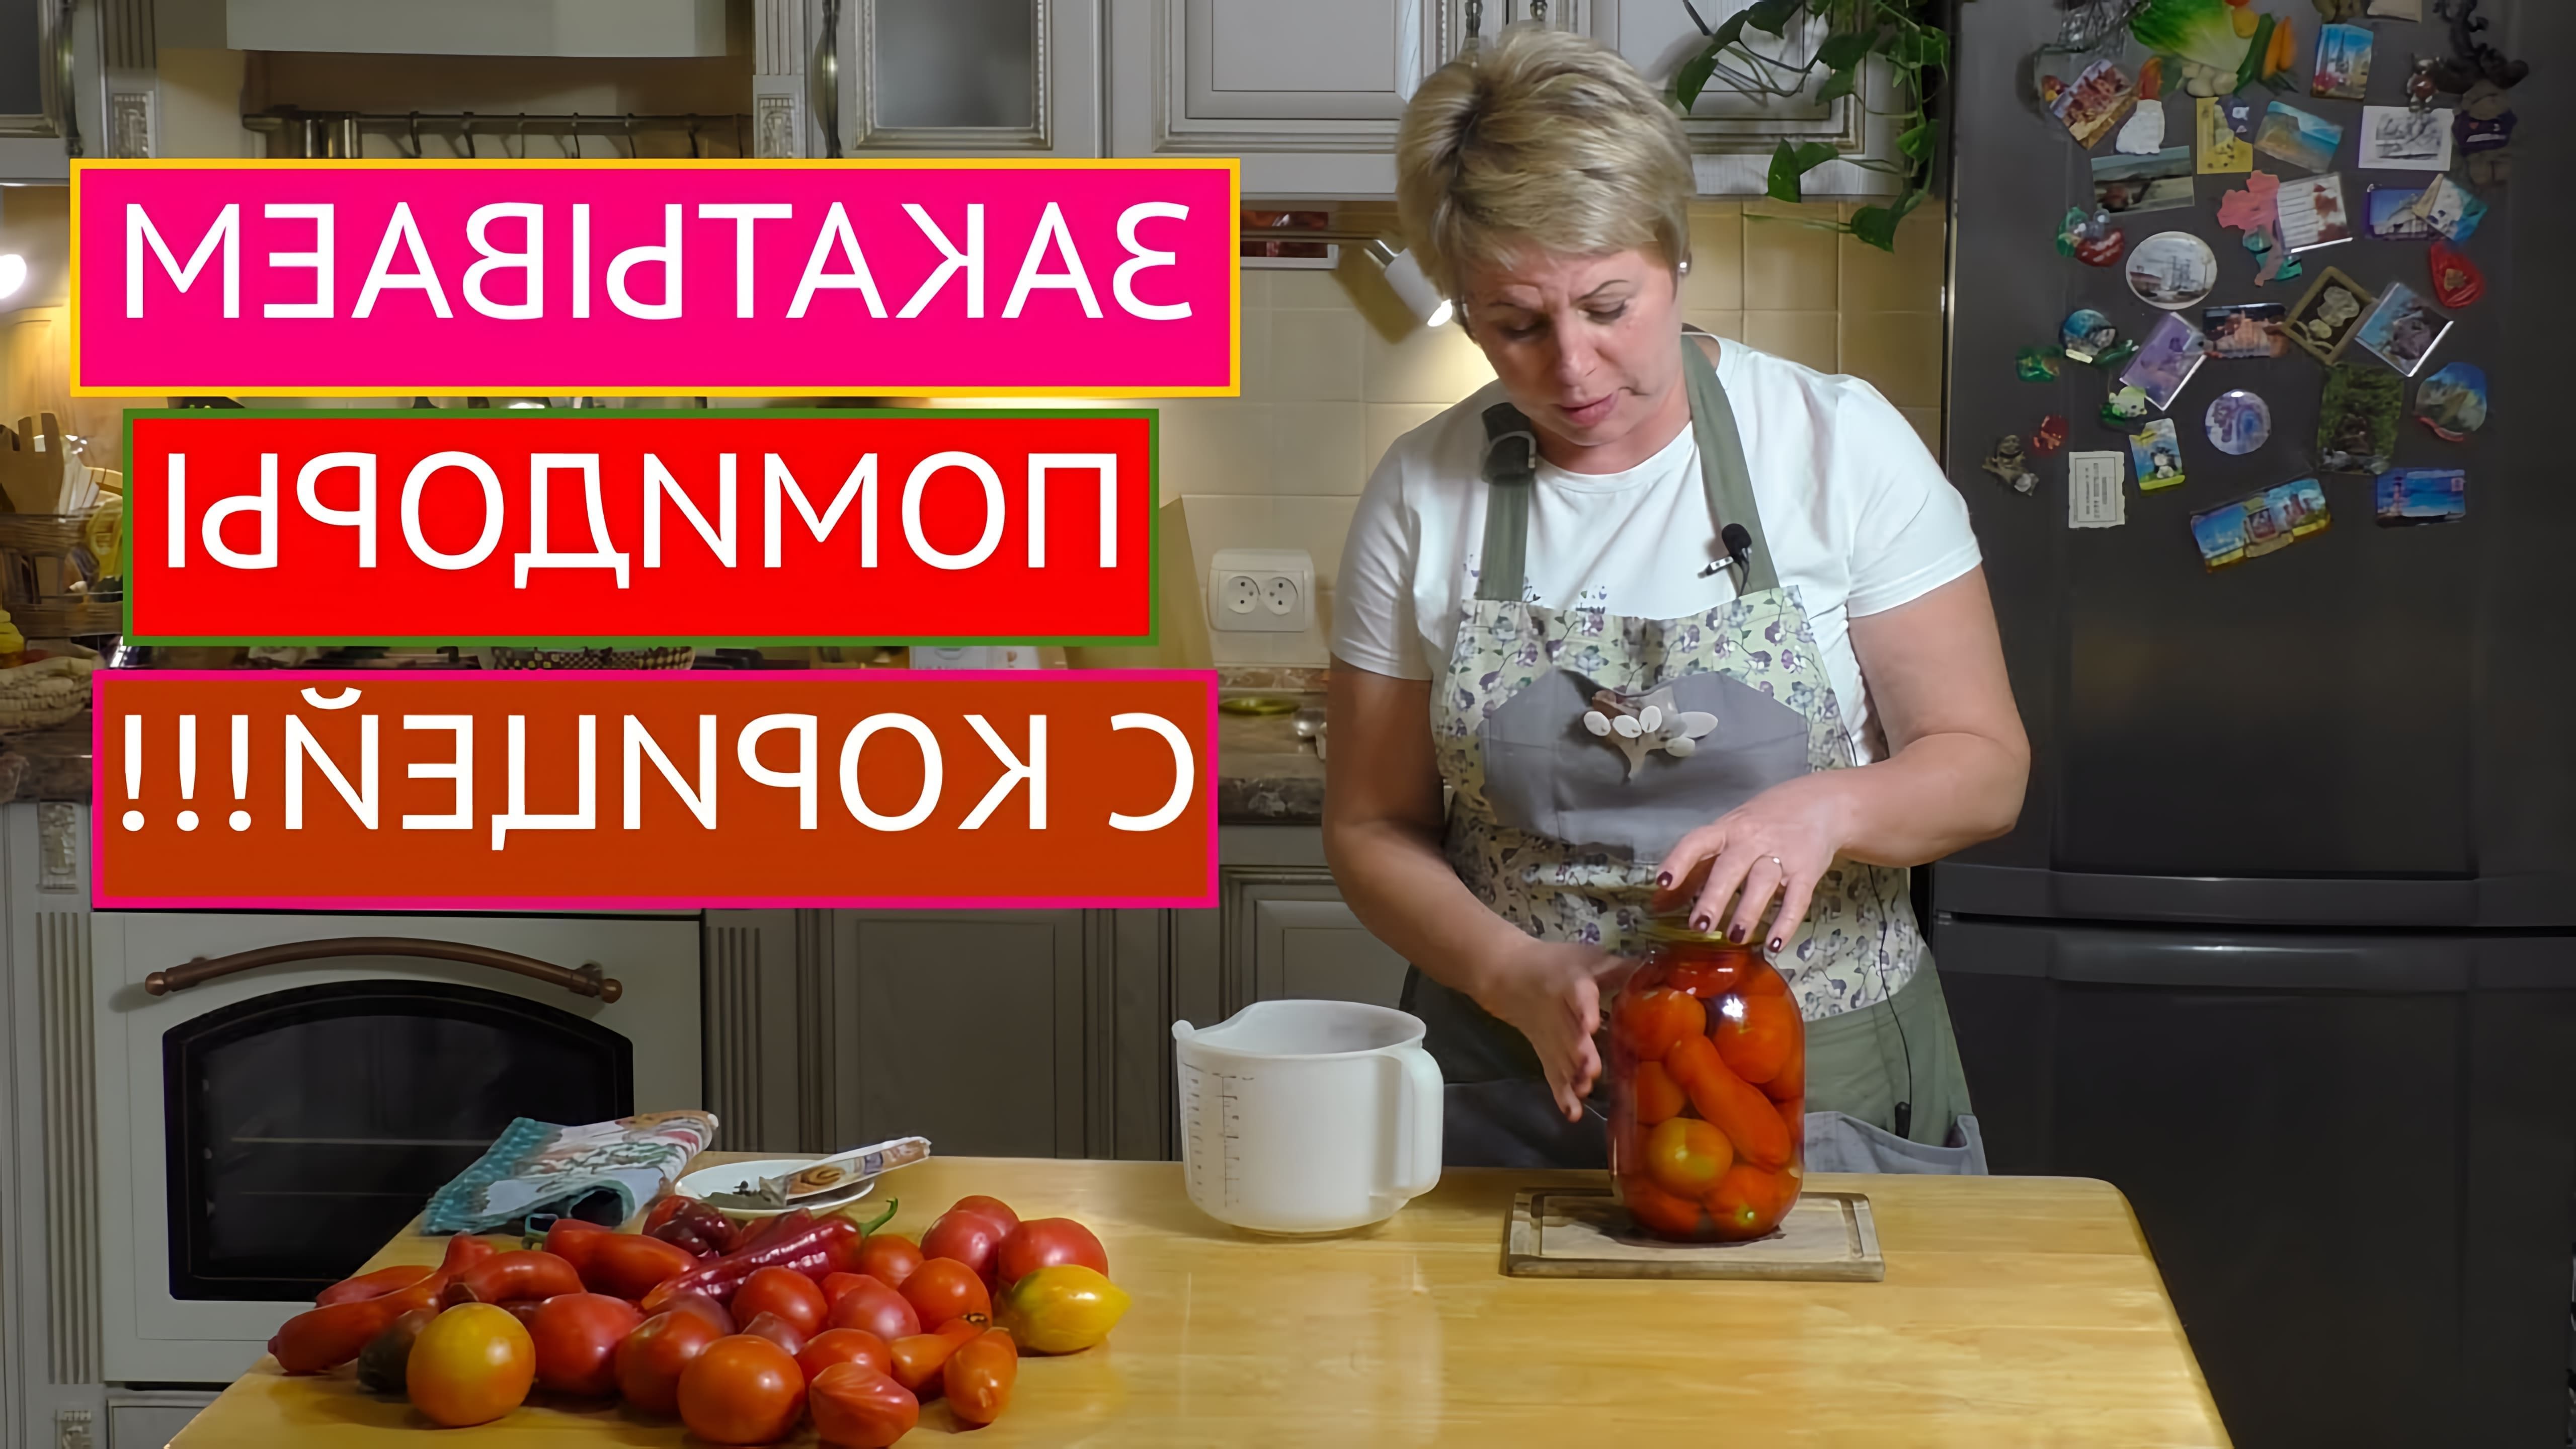 Видео представляет необычный рецепт консервирования помидоров с корицей